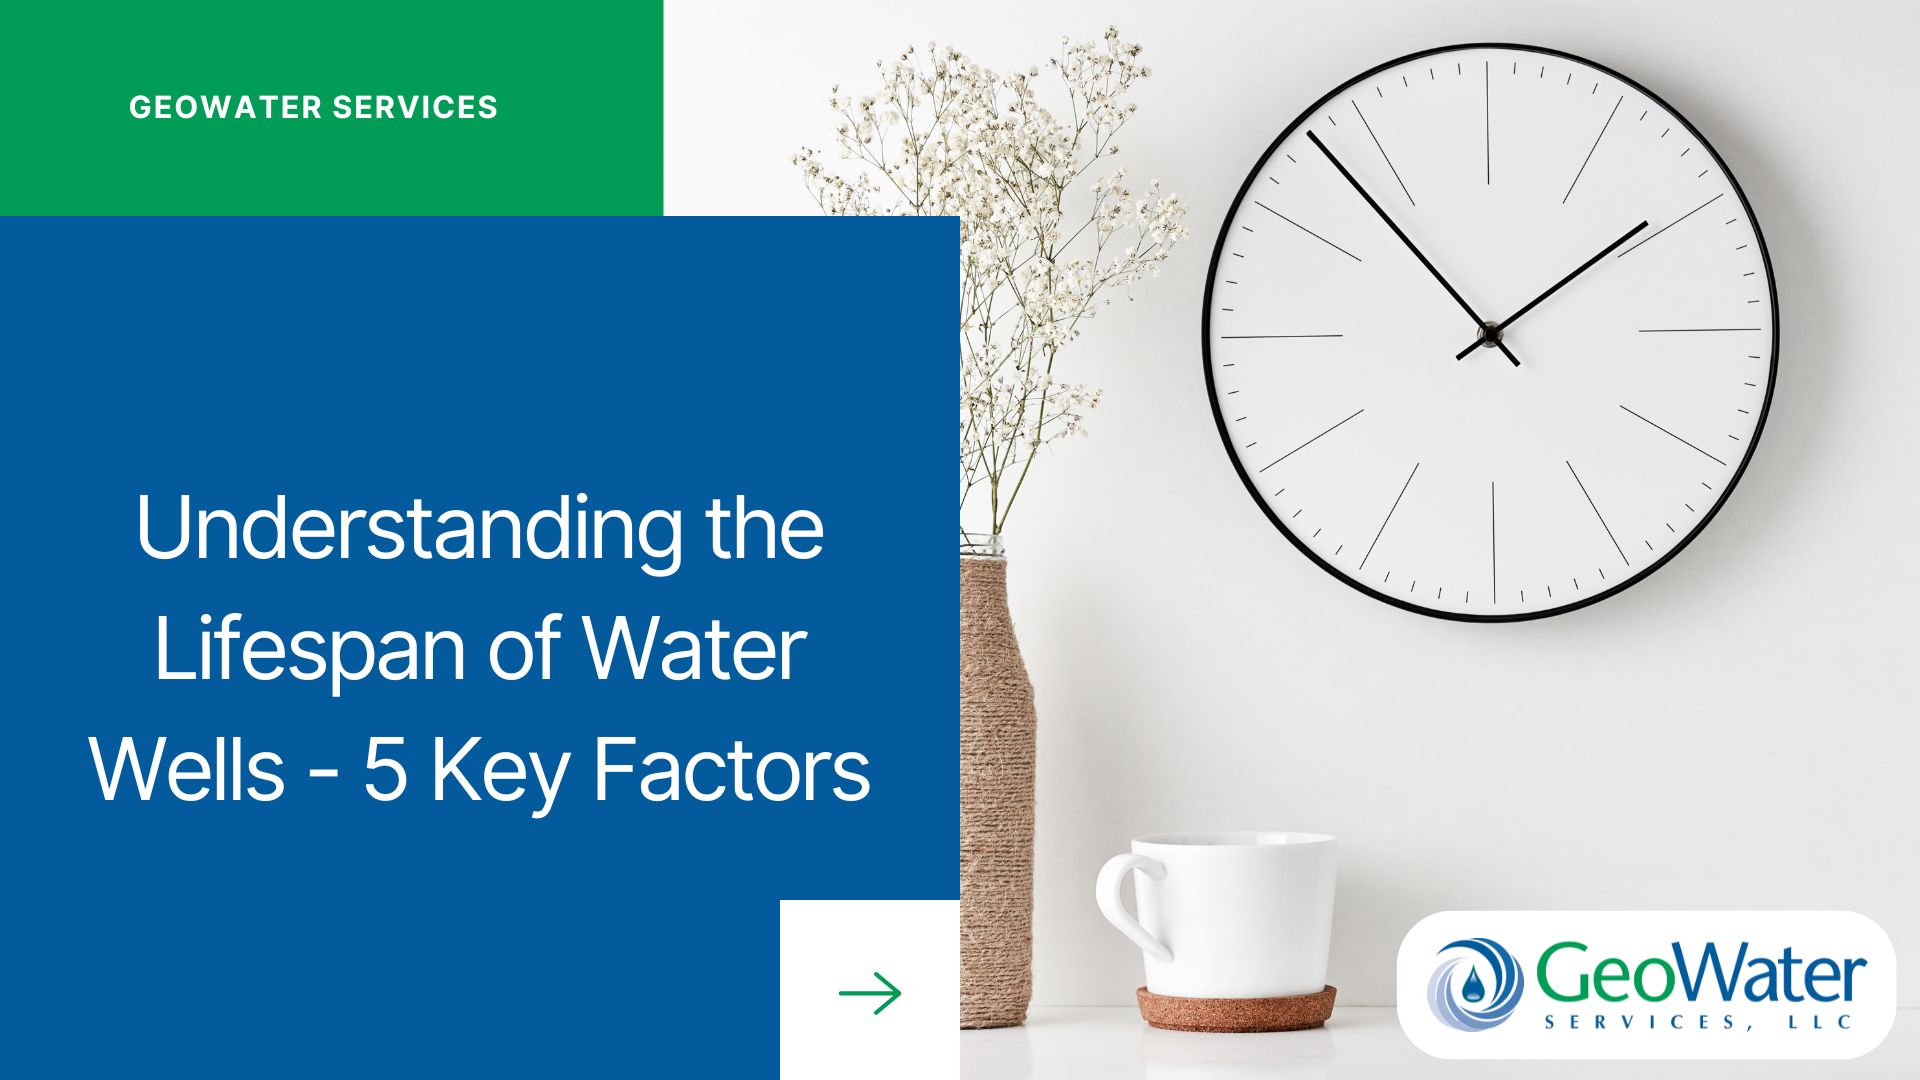 Understanding the Lifespan of Water Wells: 5 Key Factors